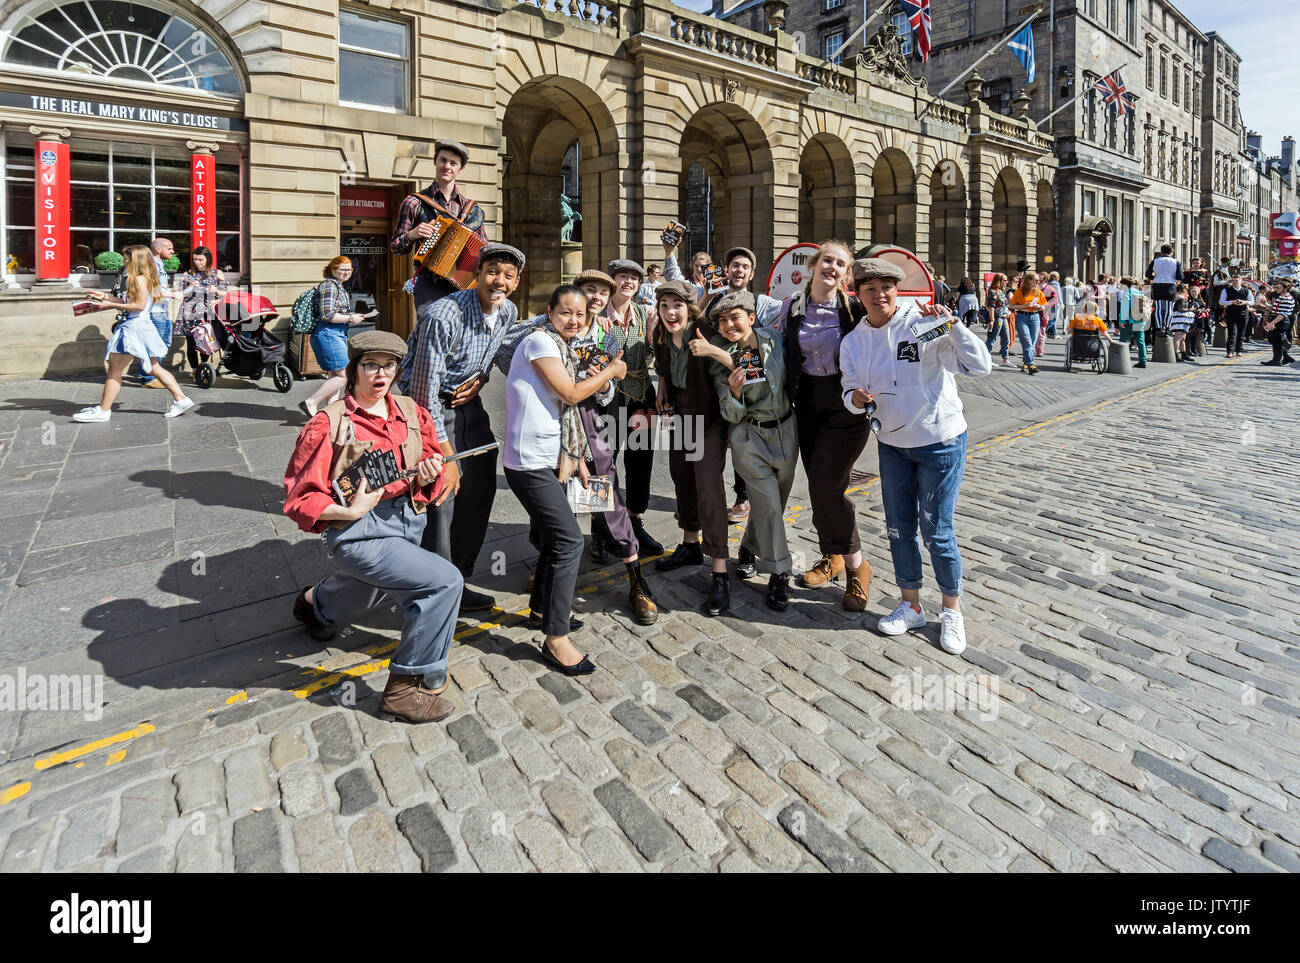 Babolin Theater Gruppe Förderung ihrer Phools Show am Edinburgh Festival Fringe 2017 in der High Street auf der Royal Mile in Edinburgh Schottland Großbritannien Stockfoto